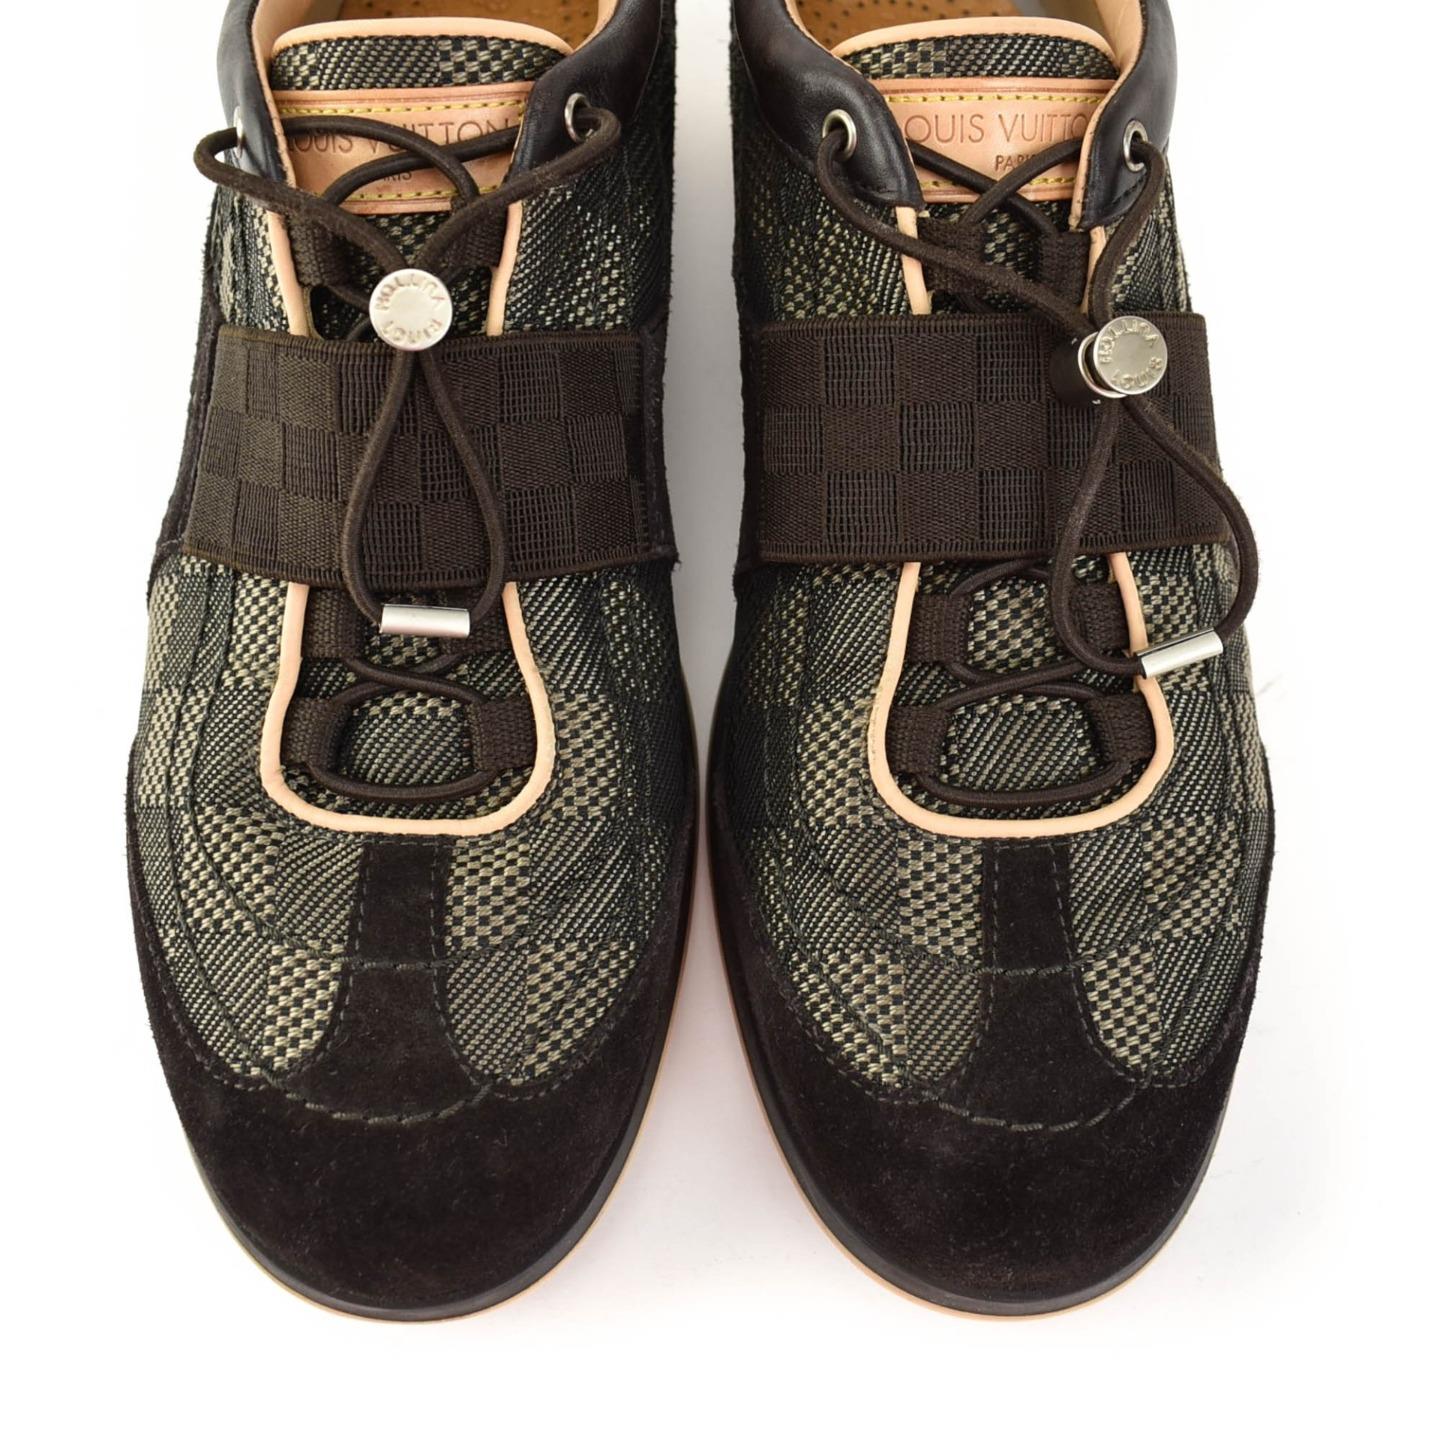 LOUIS VUITTON: Brown, Leather & &quot;Damier&quot; Logo, Sneakers/Athletic Shoes Sz: 8M | eBay